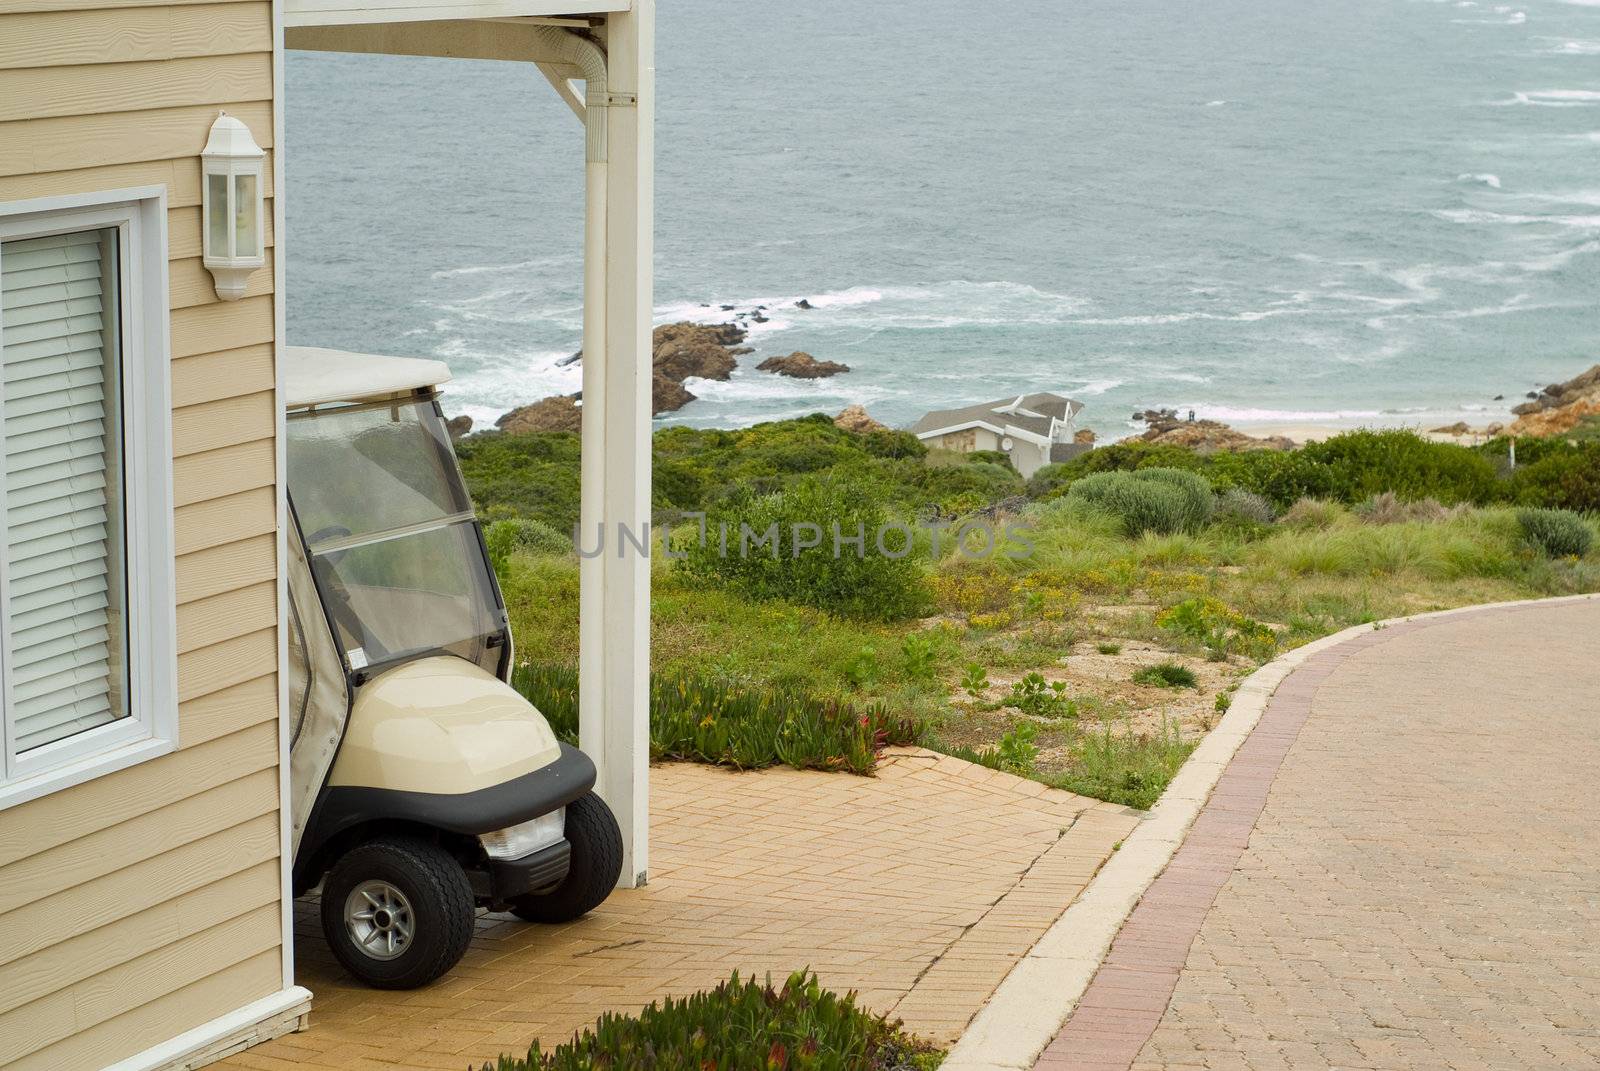 Golf cart outside sea holiday home